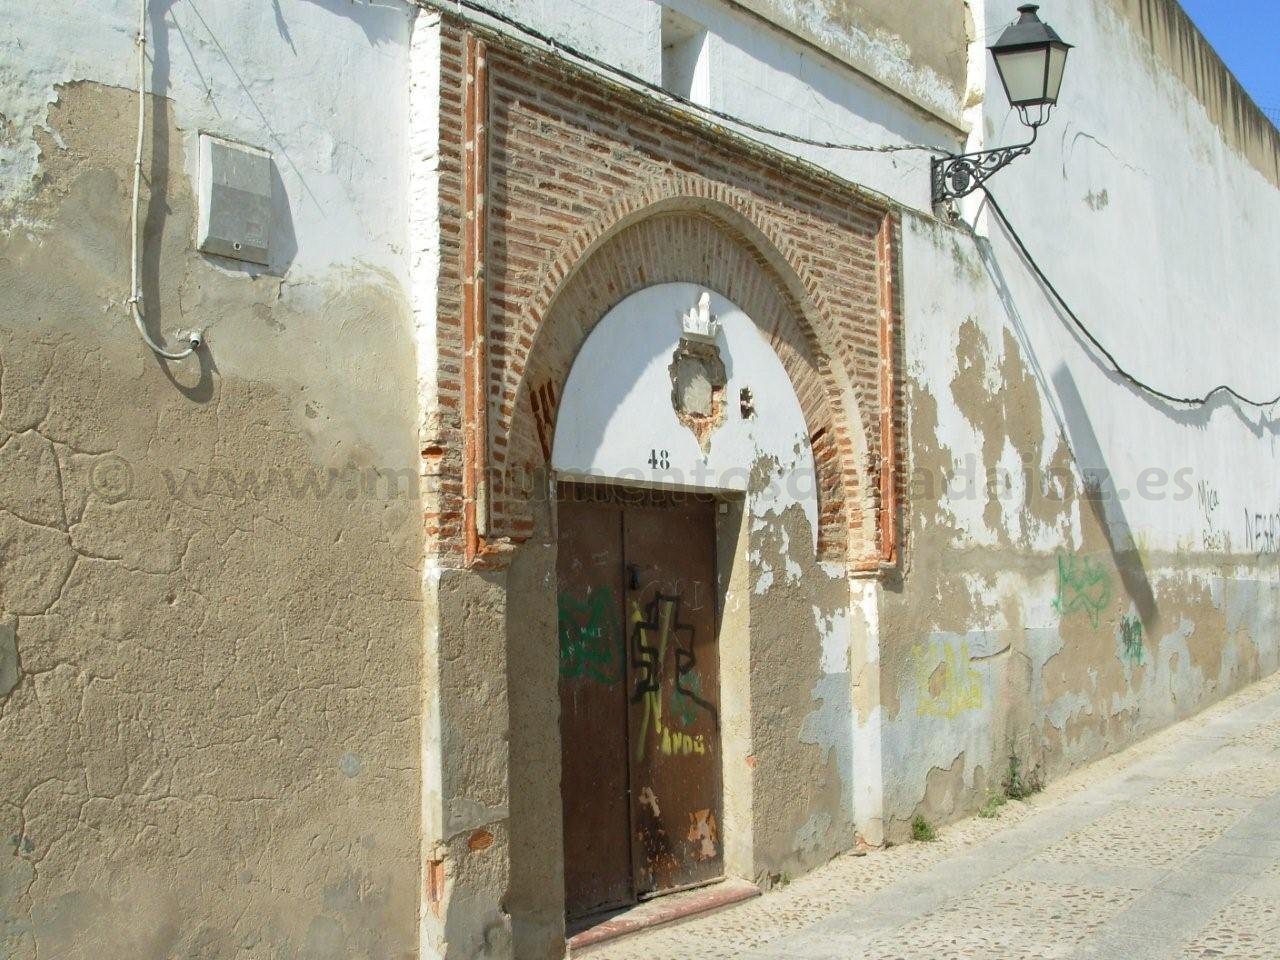 Portada mudjar del Antiguo Convento de Las Trinitarias o de Los Remedios, Badajoz